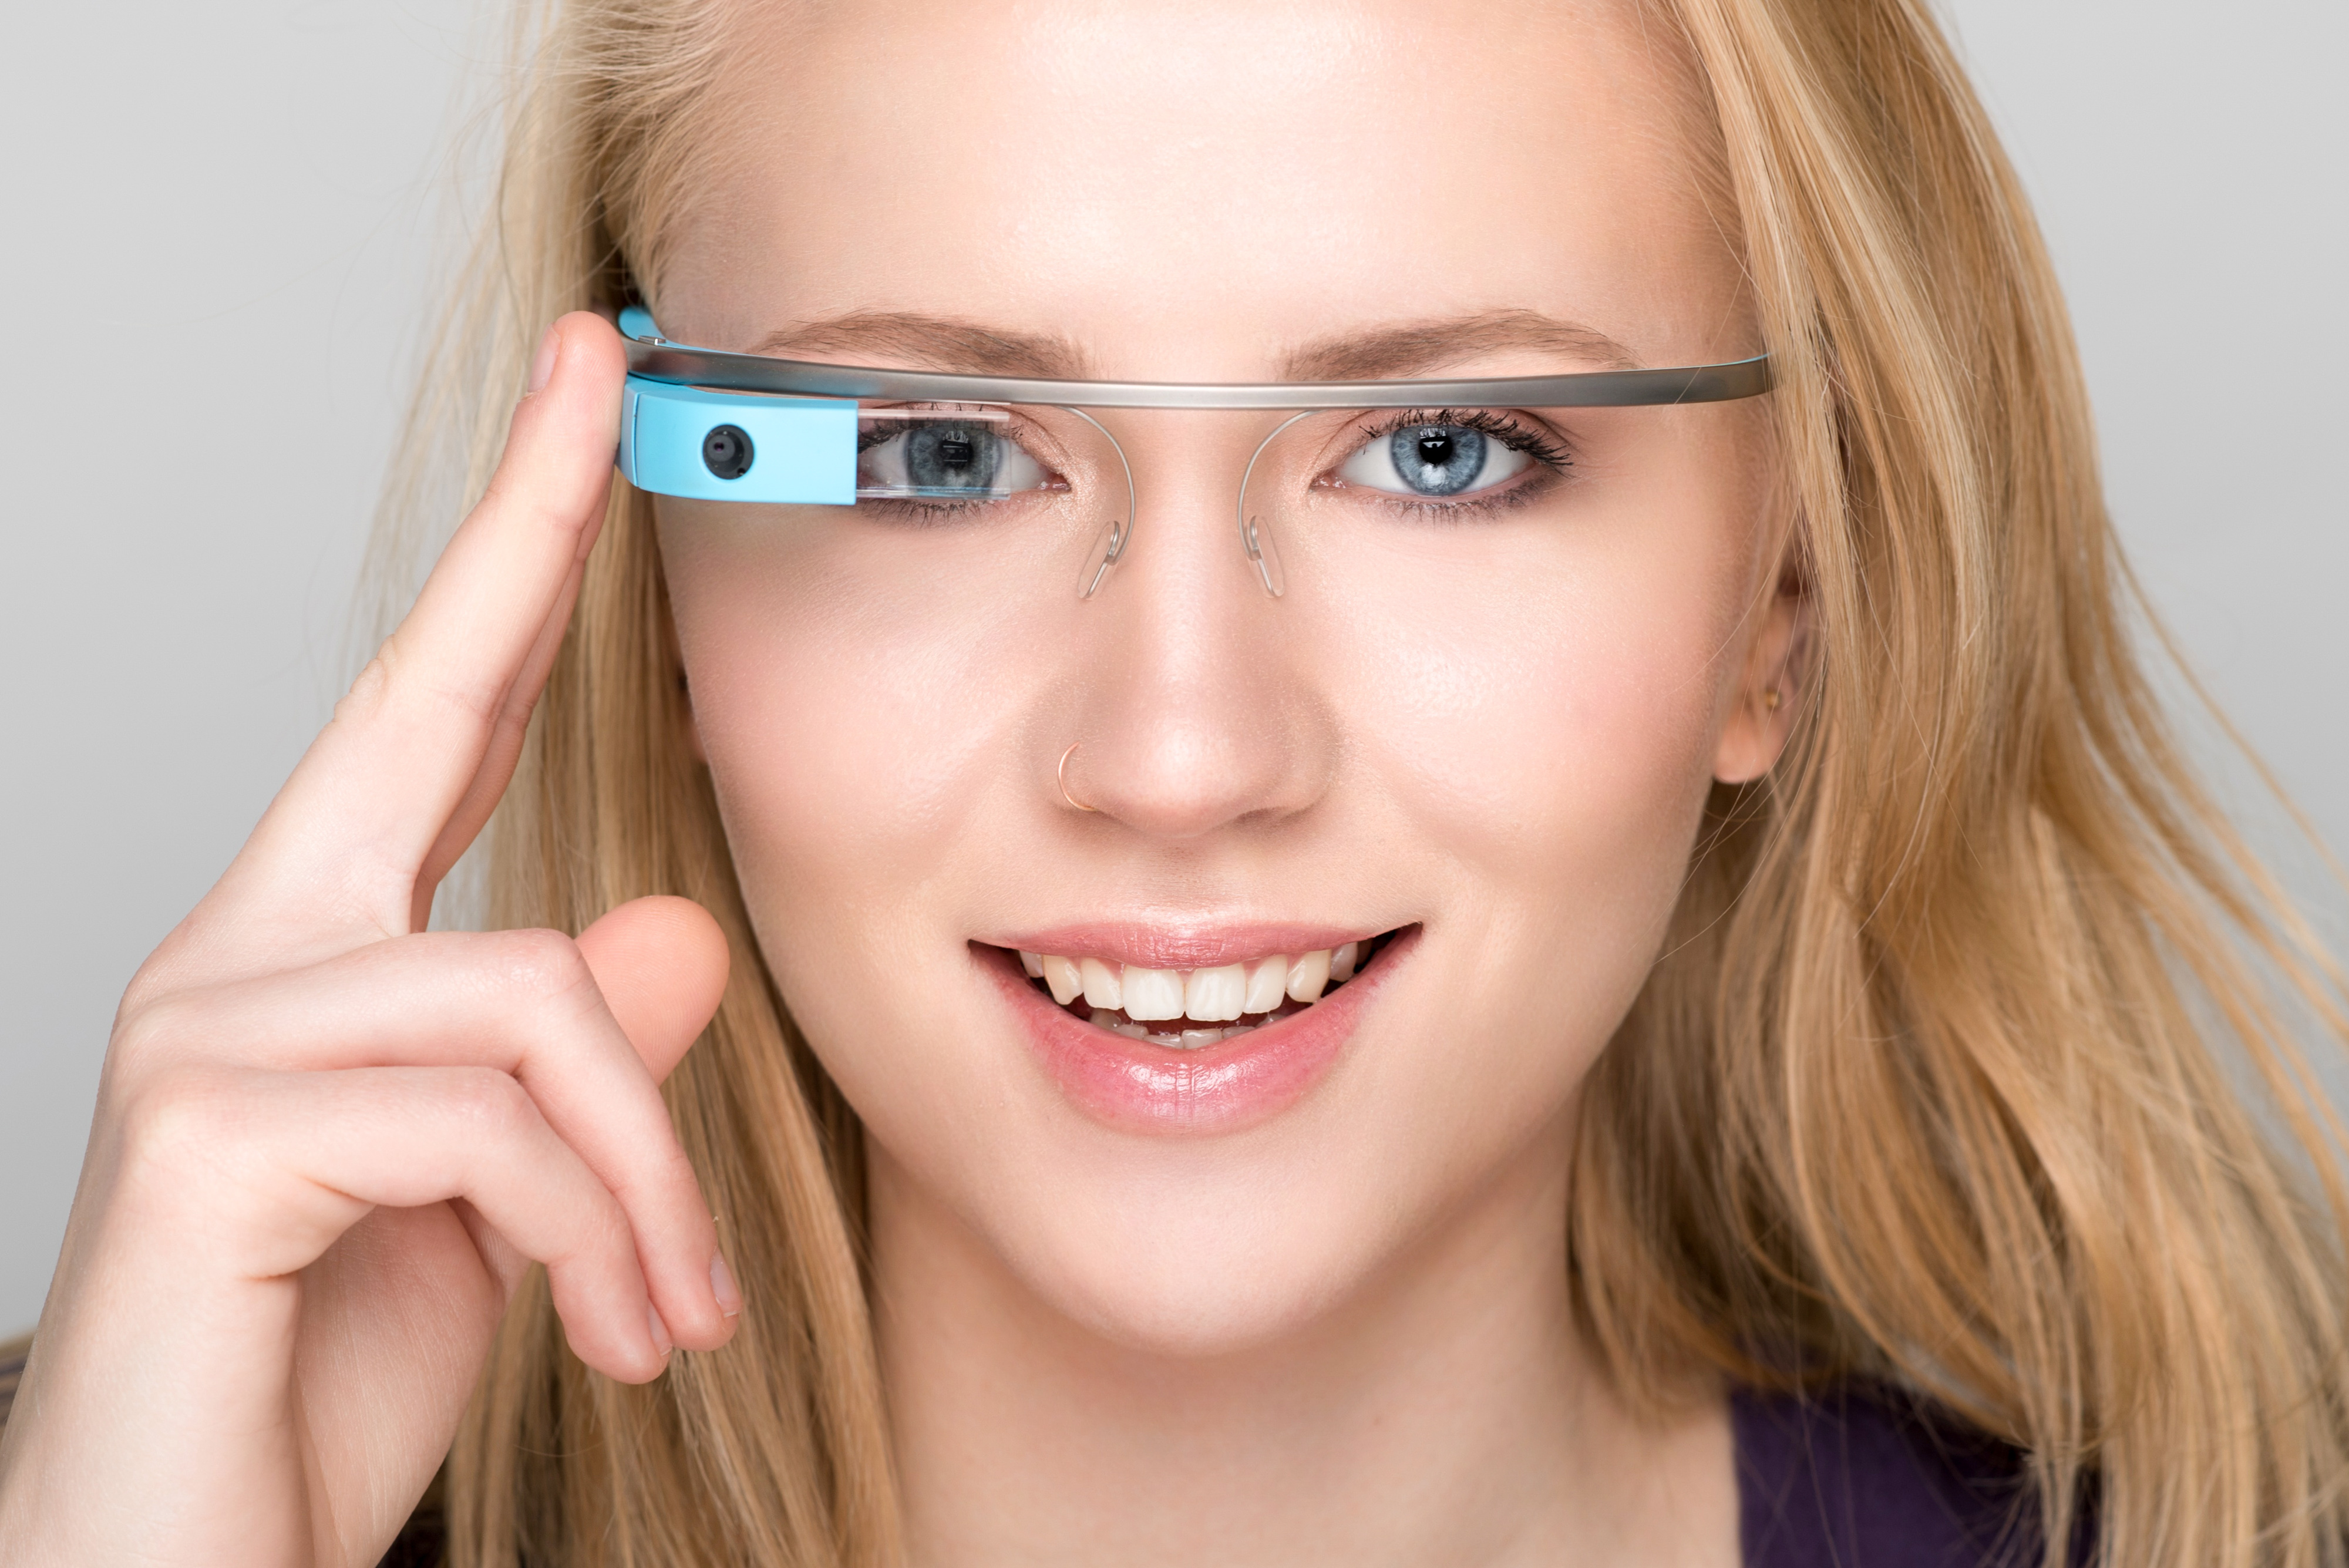 Lancées en fanfare en 2013, les Google Glass n’ont finalement pas convaincu. Google a stoppé leur production en 2015 sans pour autant abandonner le projet. En 2019, sont apparues des Google Glass 2, une version destinée aux professionnels. © Giuseppe Costantino, Shutterstock